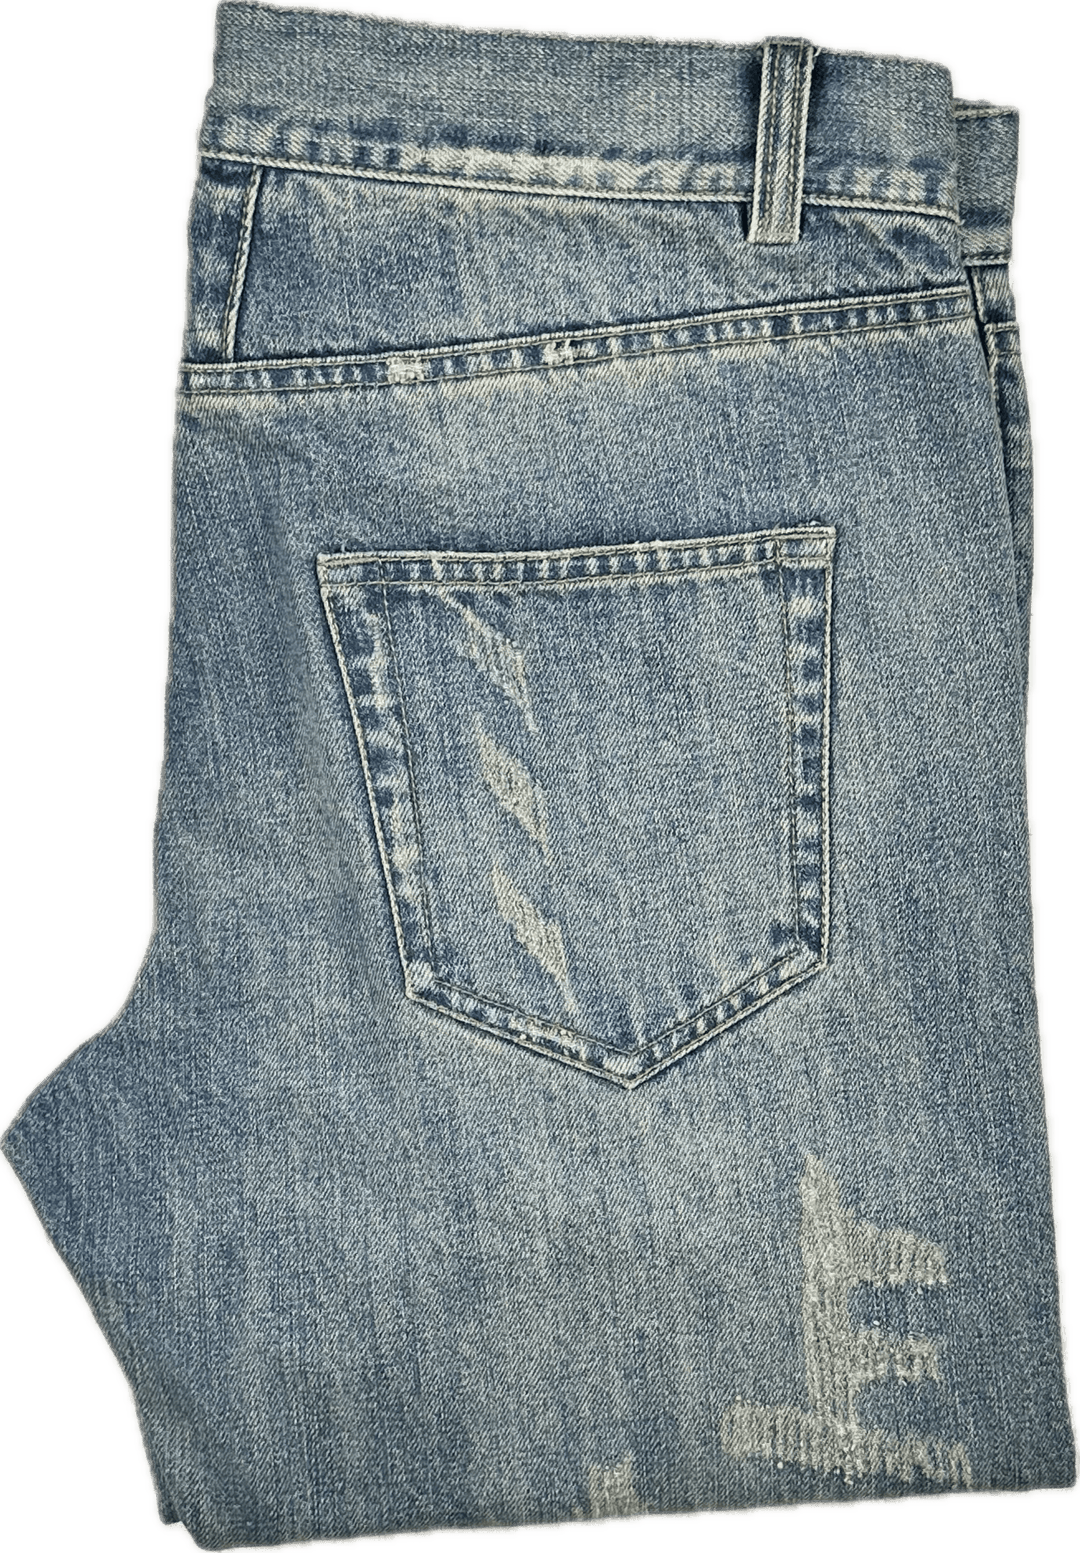 Saint Laurent Paris Authentic Chain Jeans -Size 32 Suit 11/12 - Jean Pool